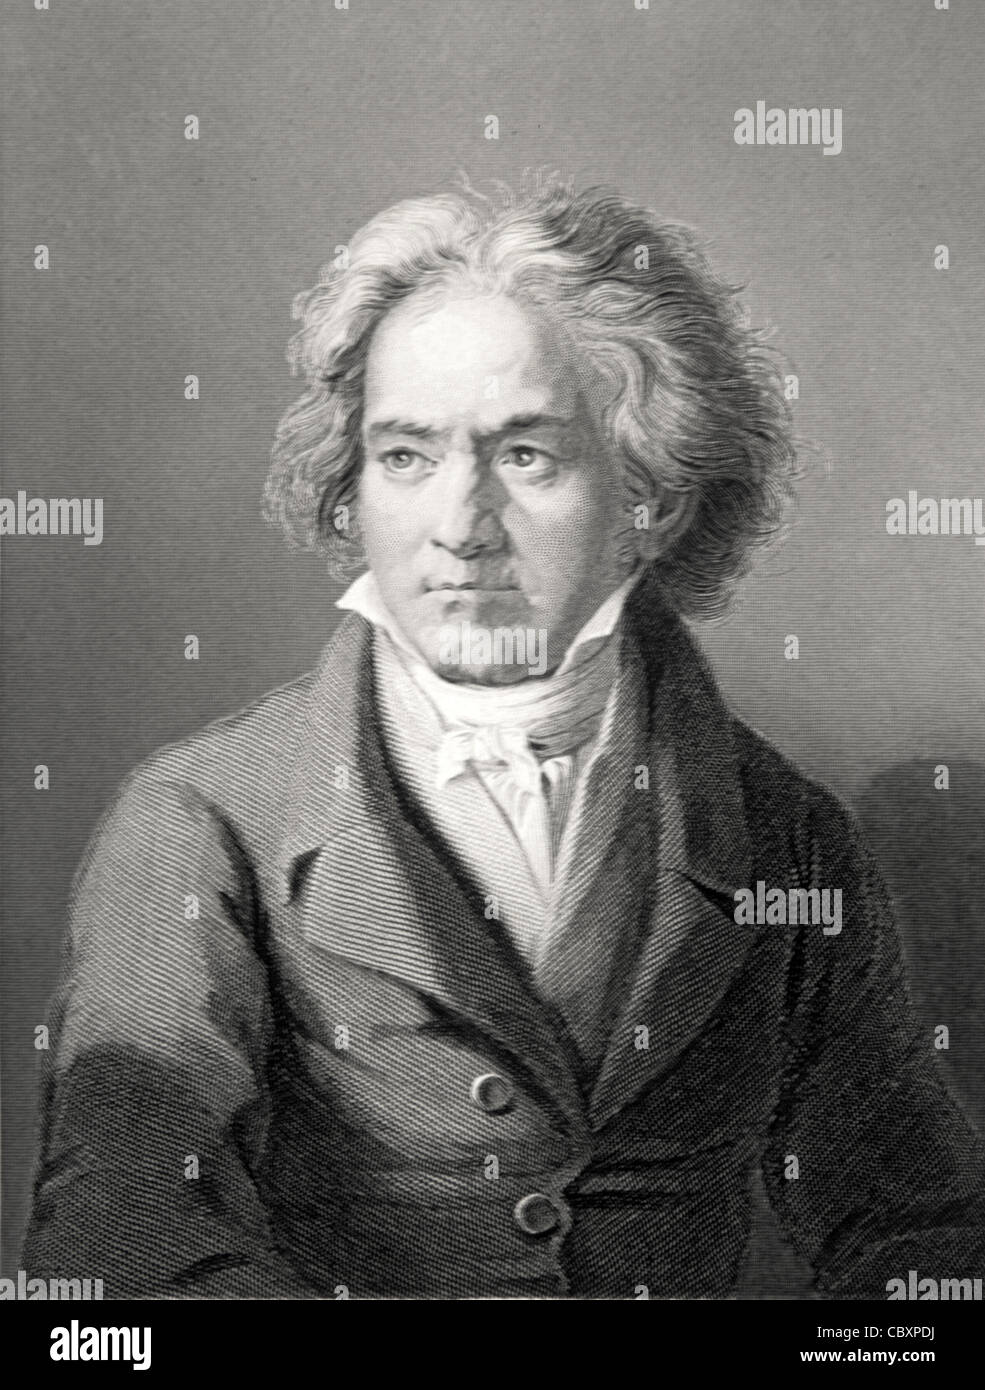 Portrait de Ludwig van Beethoven (1770-1827) compositeur allemand c19th gravure de W. Holl de Painting by Kloeber. Illustration vintage Banque D'Images